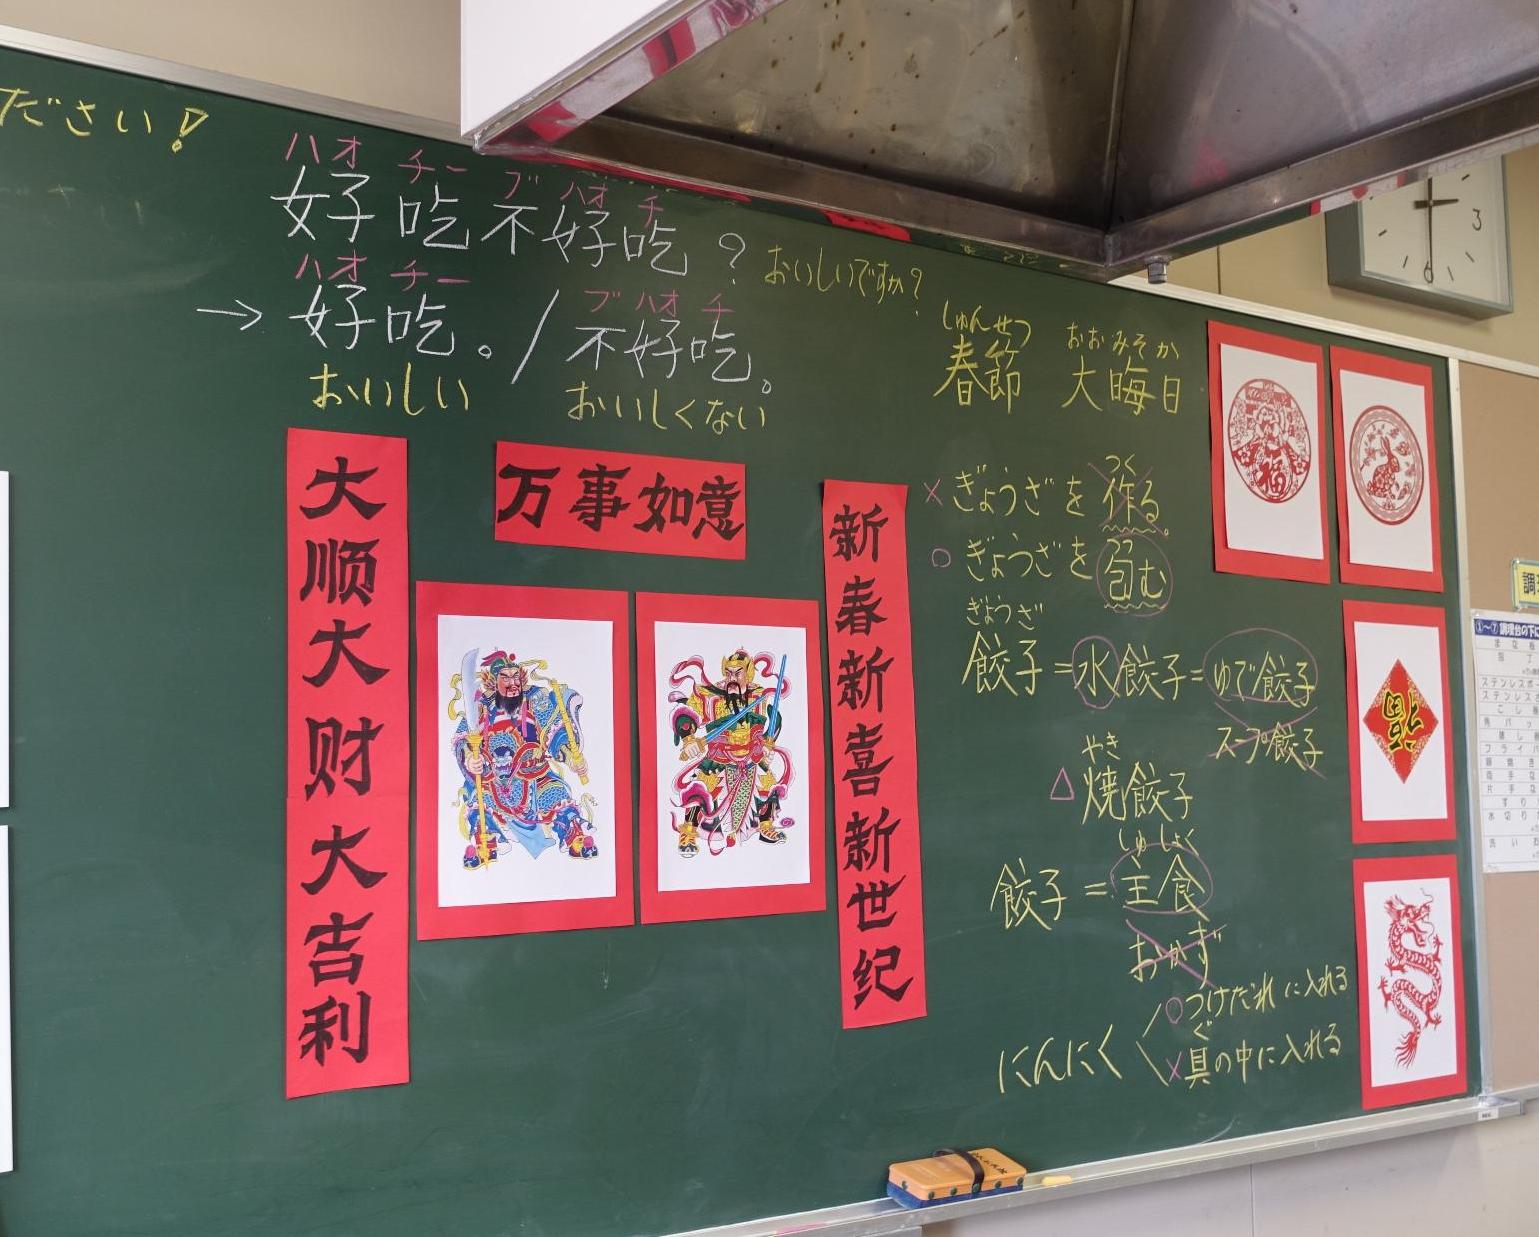 中国の餃子にまつわる豆知識が黒板に書かれています